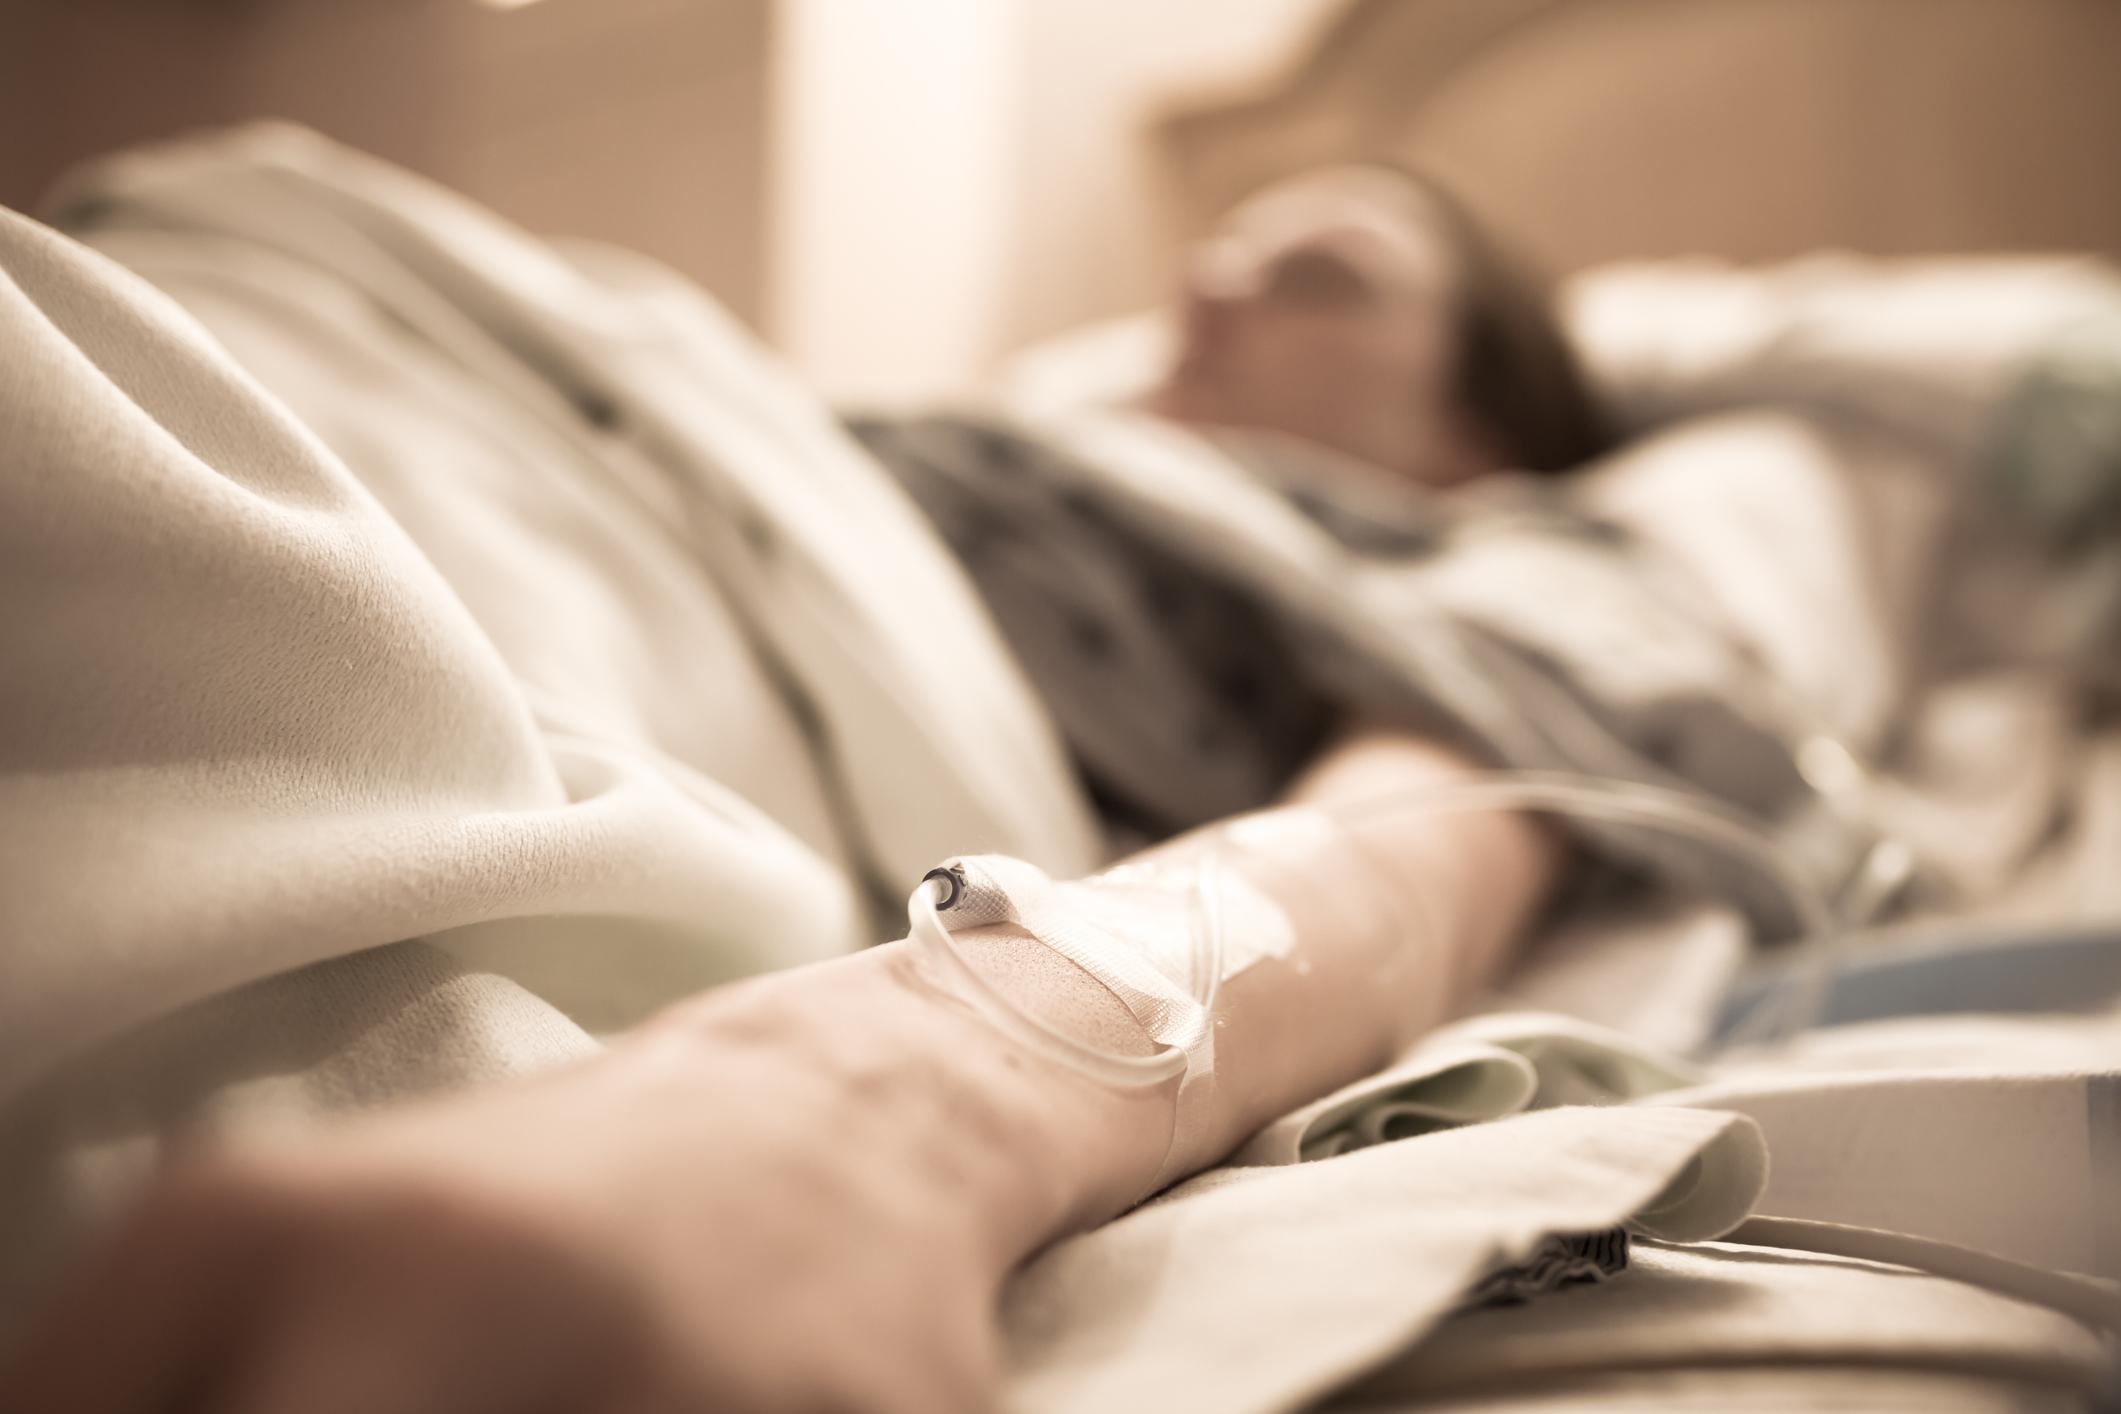 Frau im Krankenhausbett mit iv auf ihrem Arm.